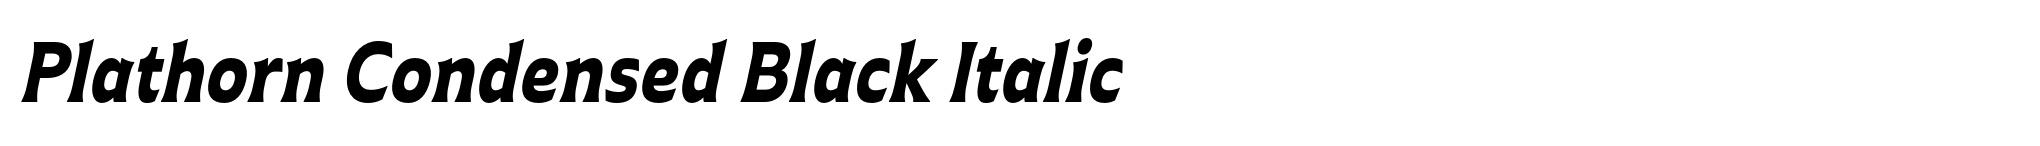 Plathorn Condensed Black Italic image